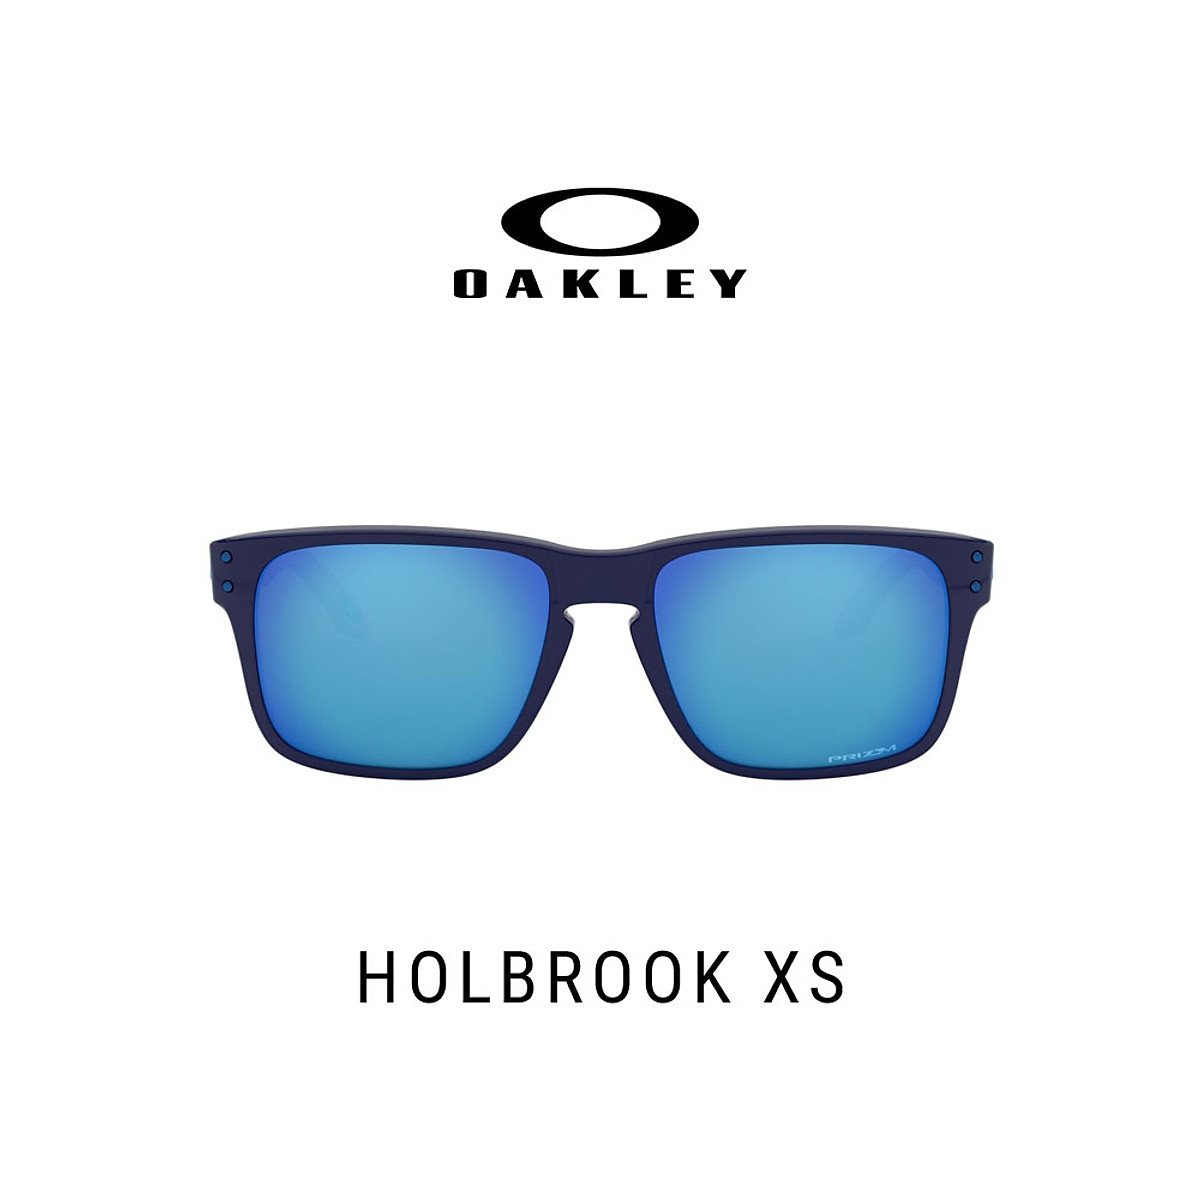 Mua Mắt Kính OAKLEY Holbrook XS - OJ9007 900705 tại Oakley Official Store